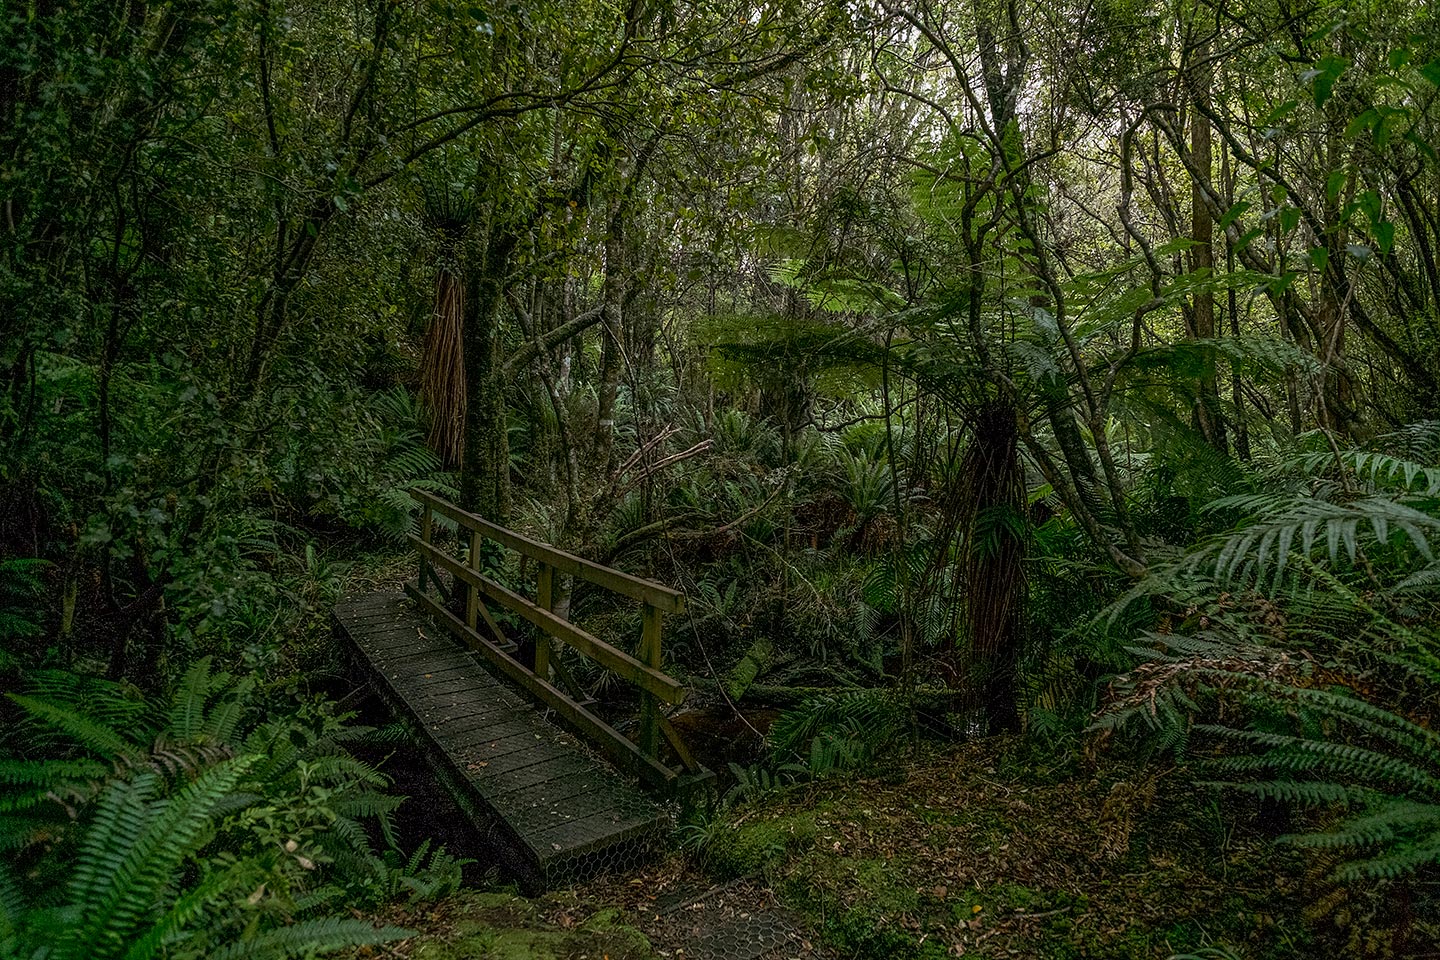 Fern Gully, Rakiura National Park, New Zealand